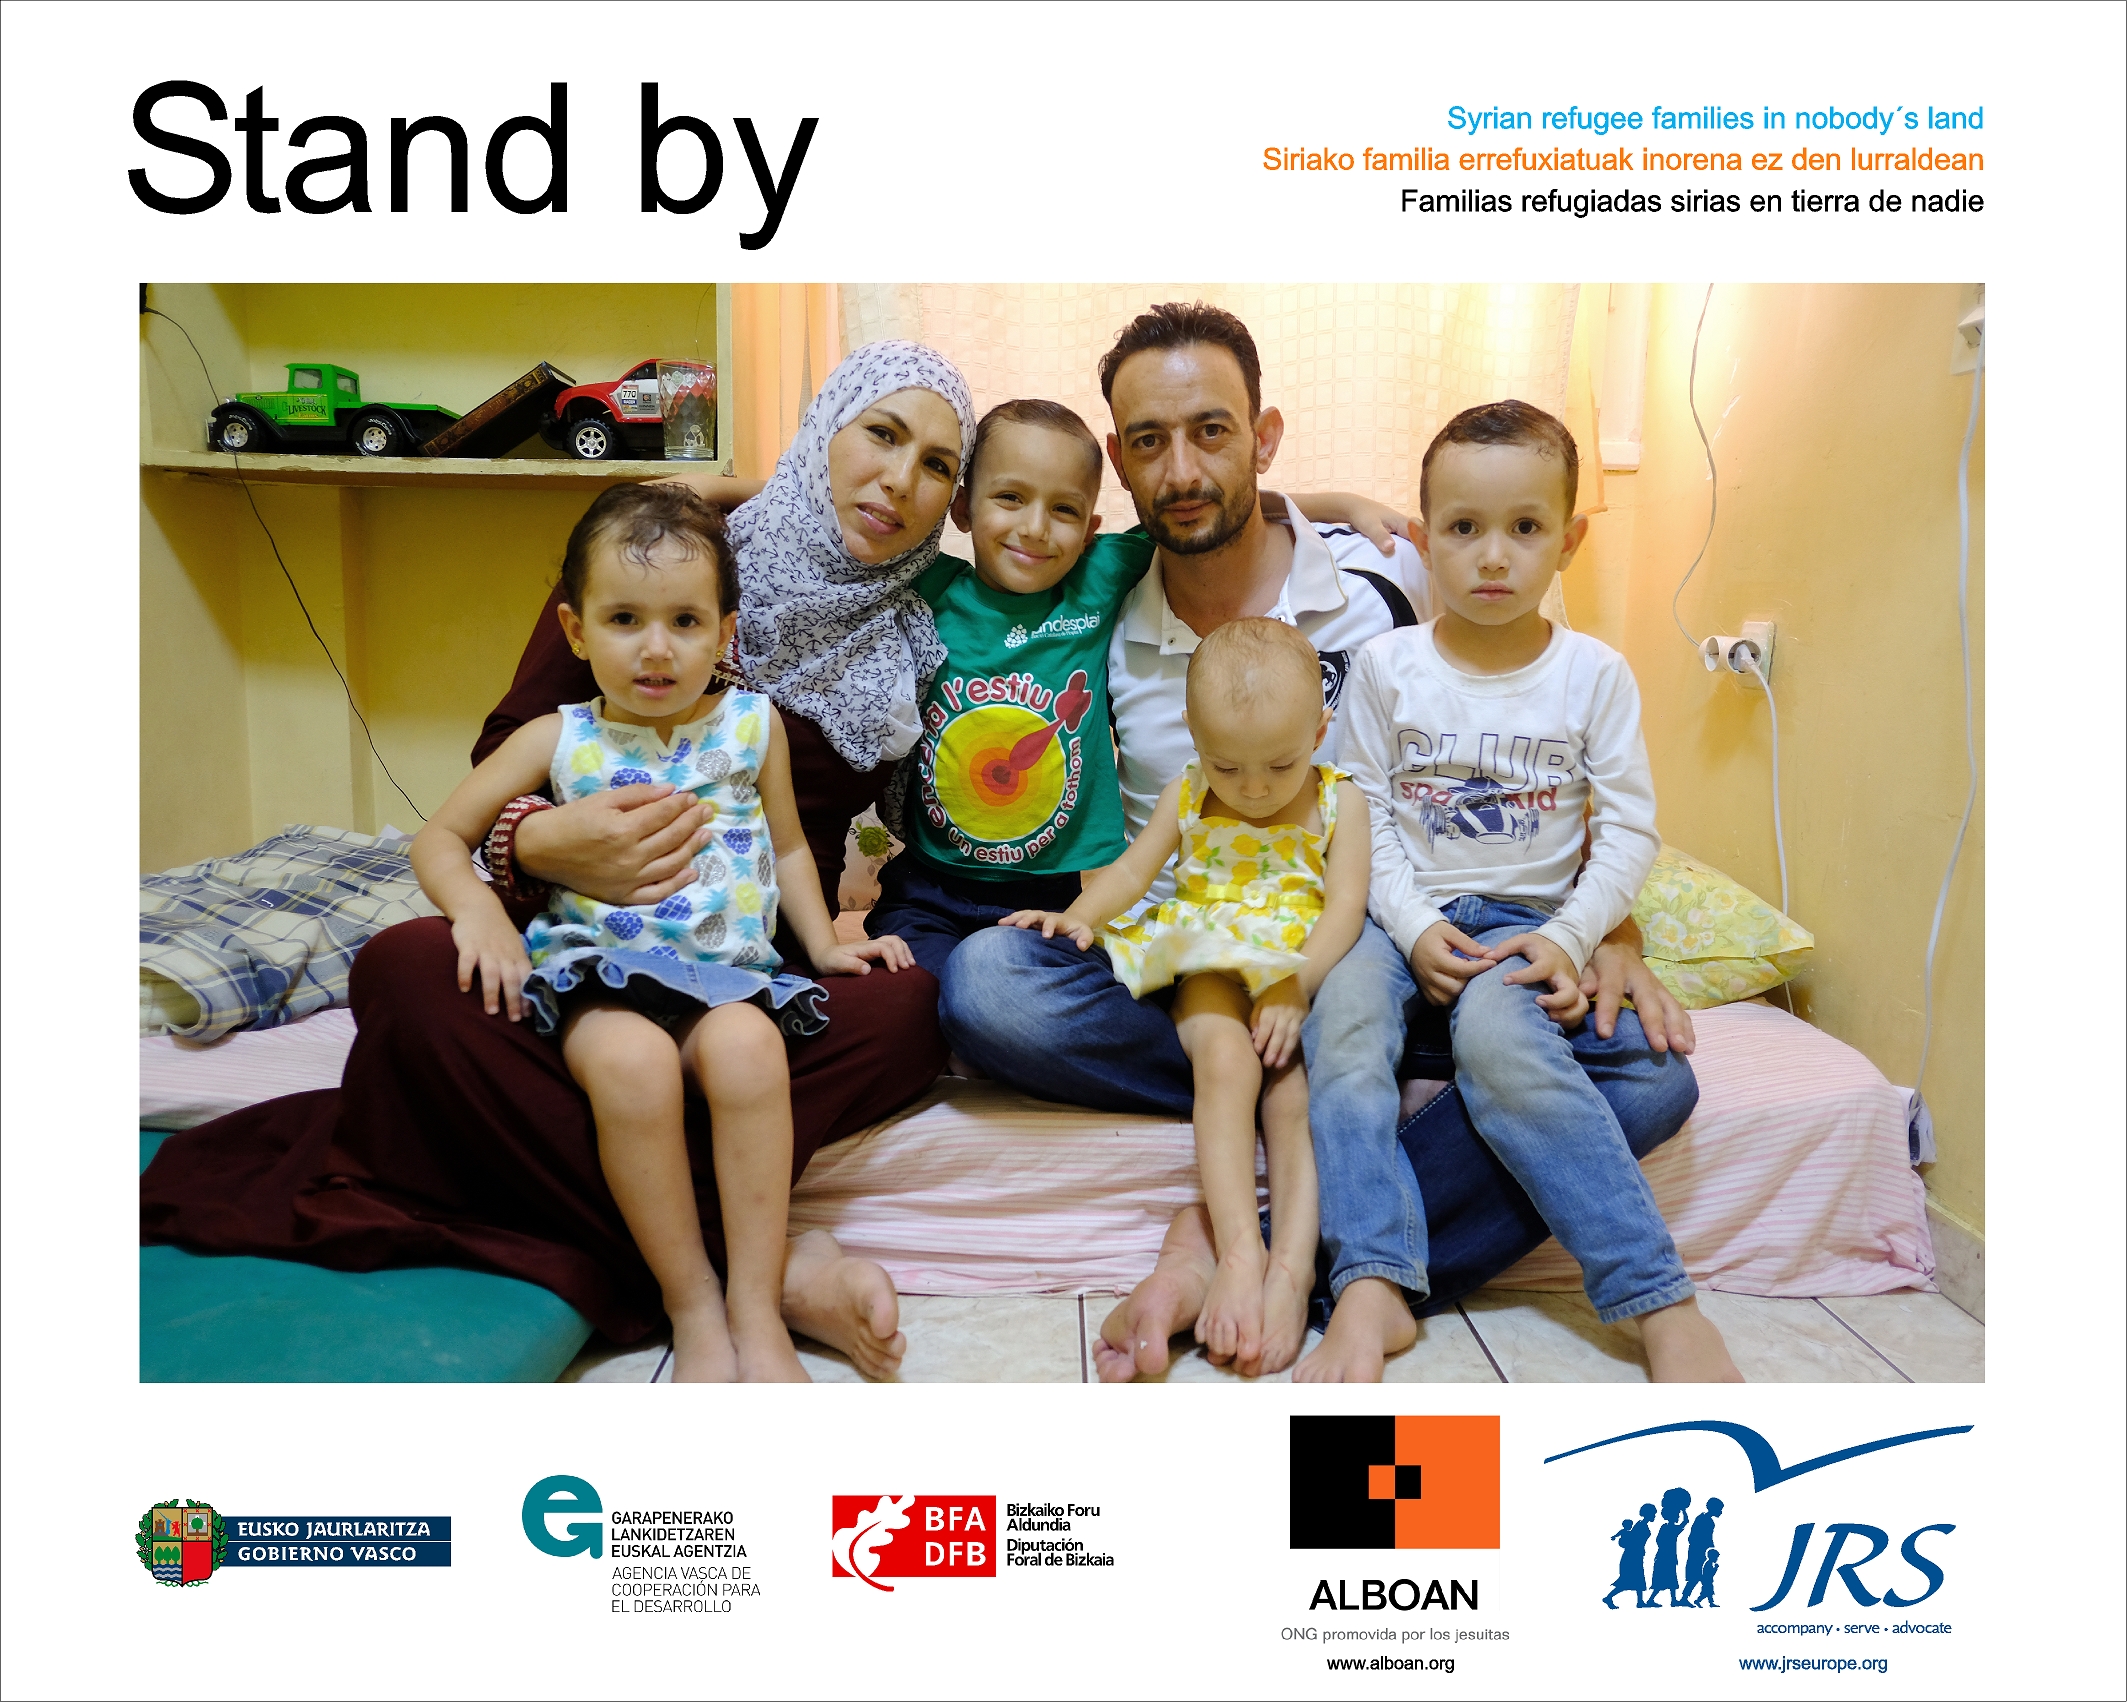 Stand by, exposición sobre familias refugiadas sirias 